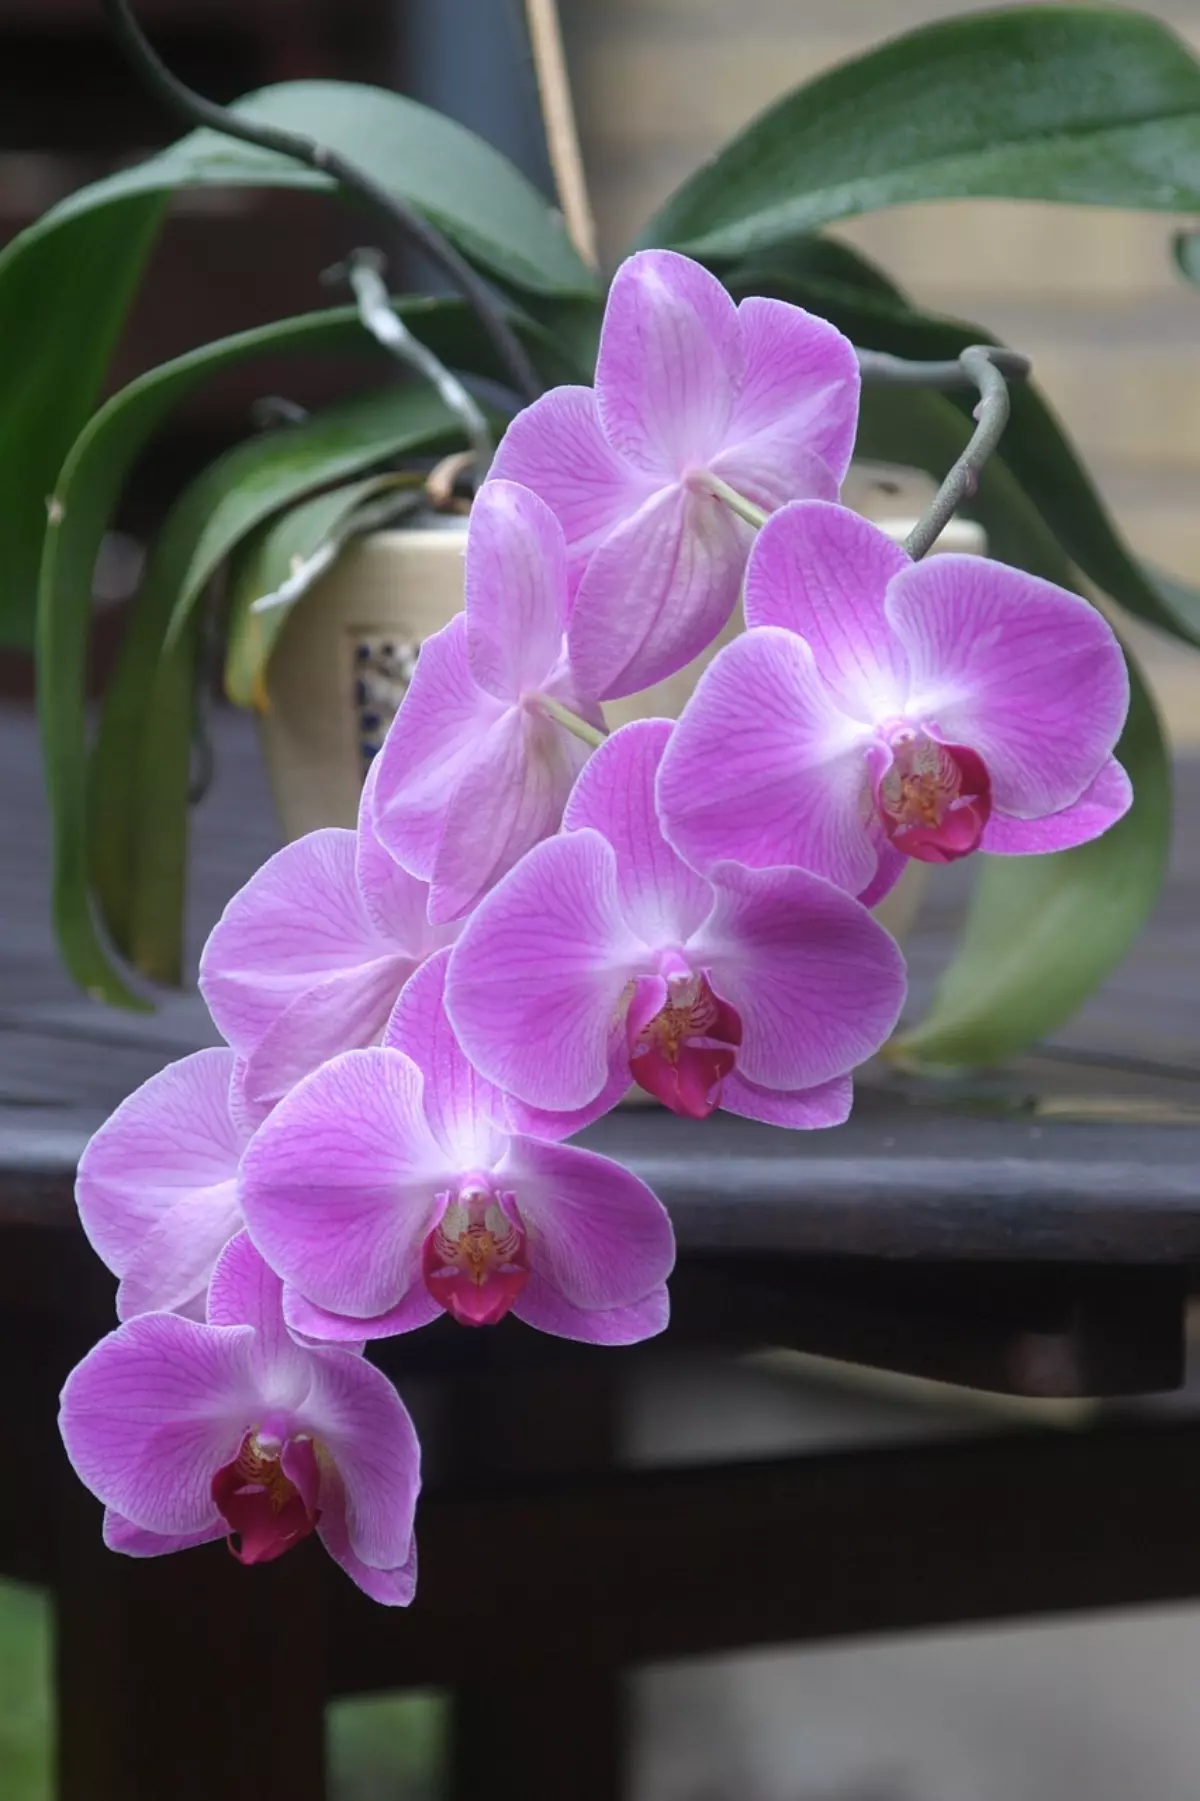 vue centree sur les fleurs violettes d une orchidee